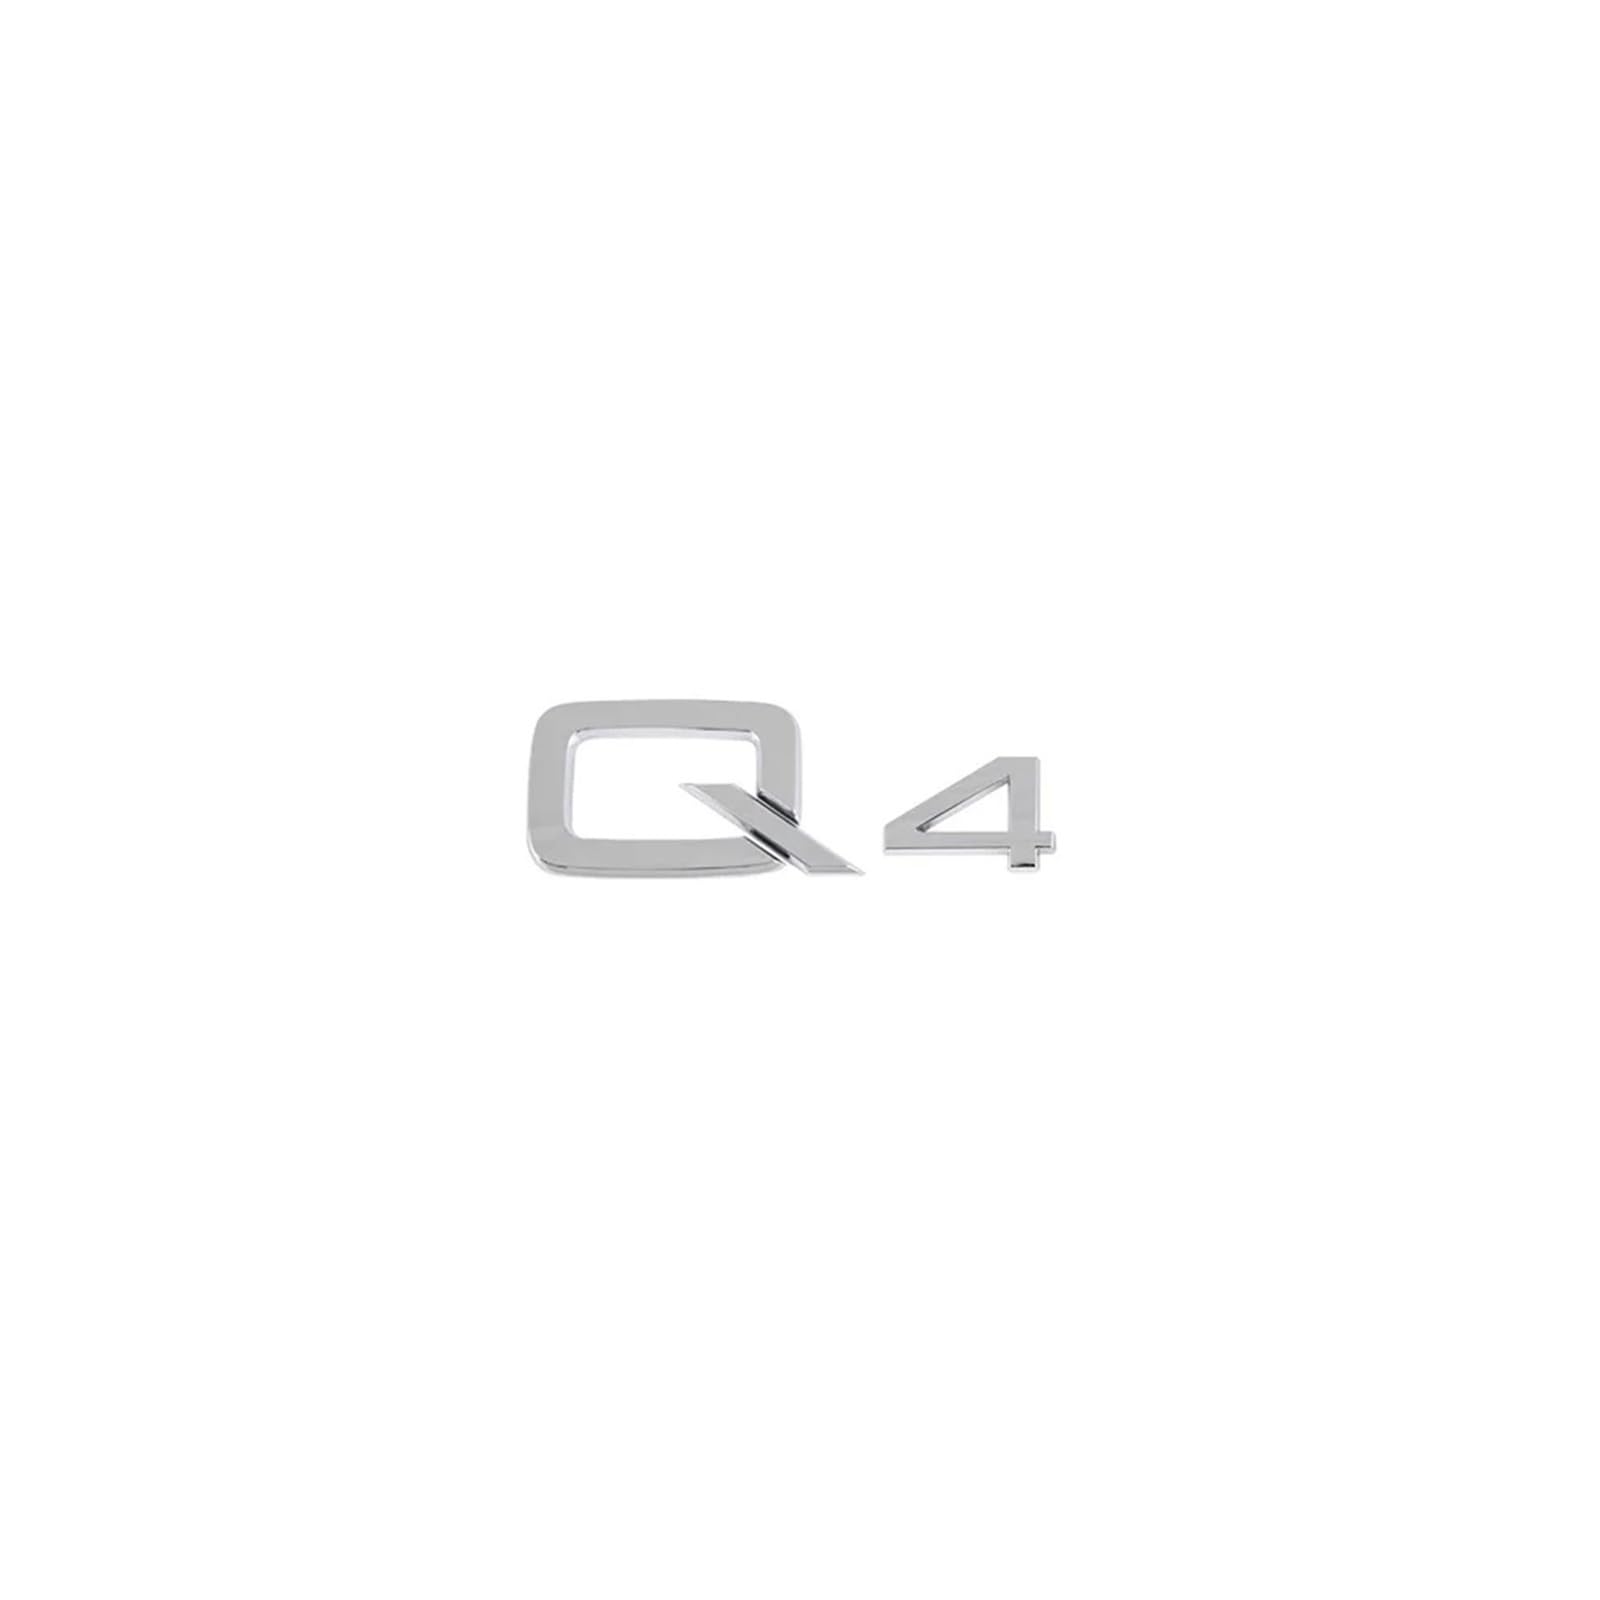 Aqxyju 3D-ABS-Zahlen-Buchstaben Q2 Q3 Q4 Q5 Q6 Q7 Q8-Emblem, kompatibel mit Q-Serie, Kofferraum-Heck-Logo-Aufkleber, Schwarz/Silber Personalisierte Auto Aufkleber(Silver Q4) von Aqxyju